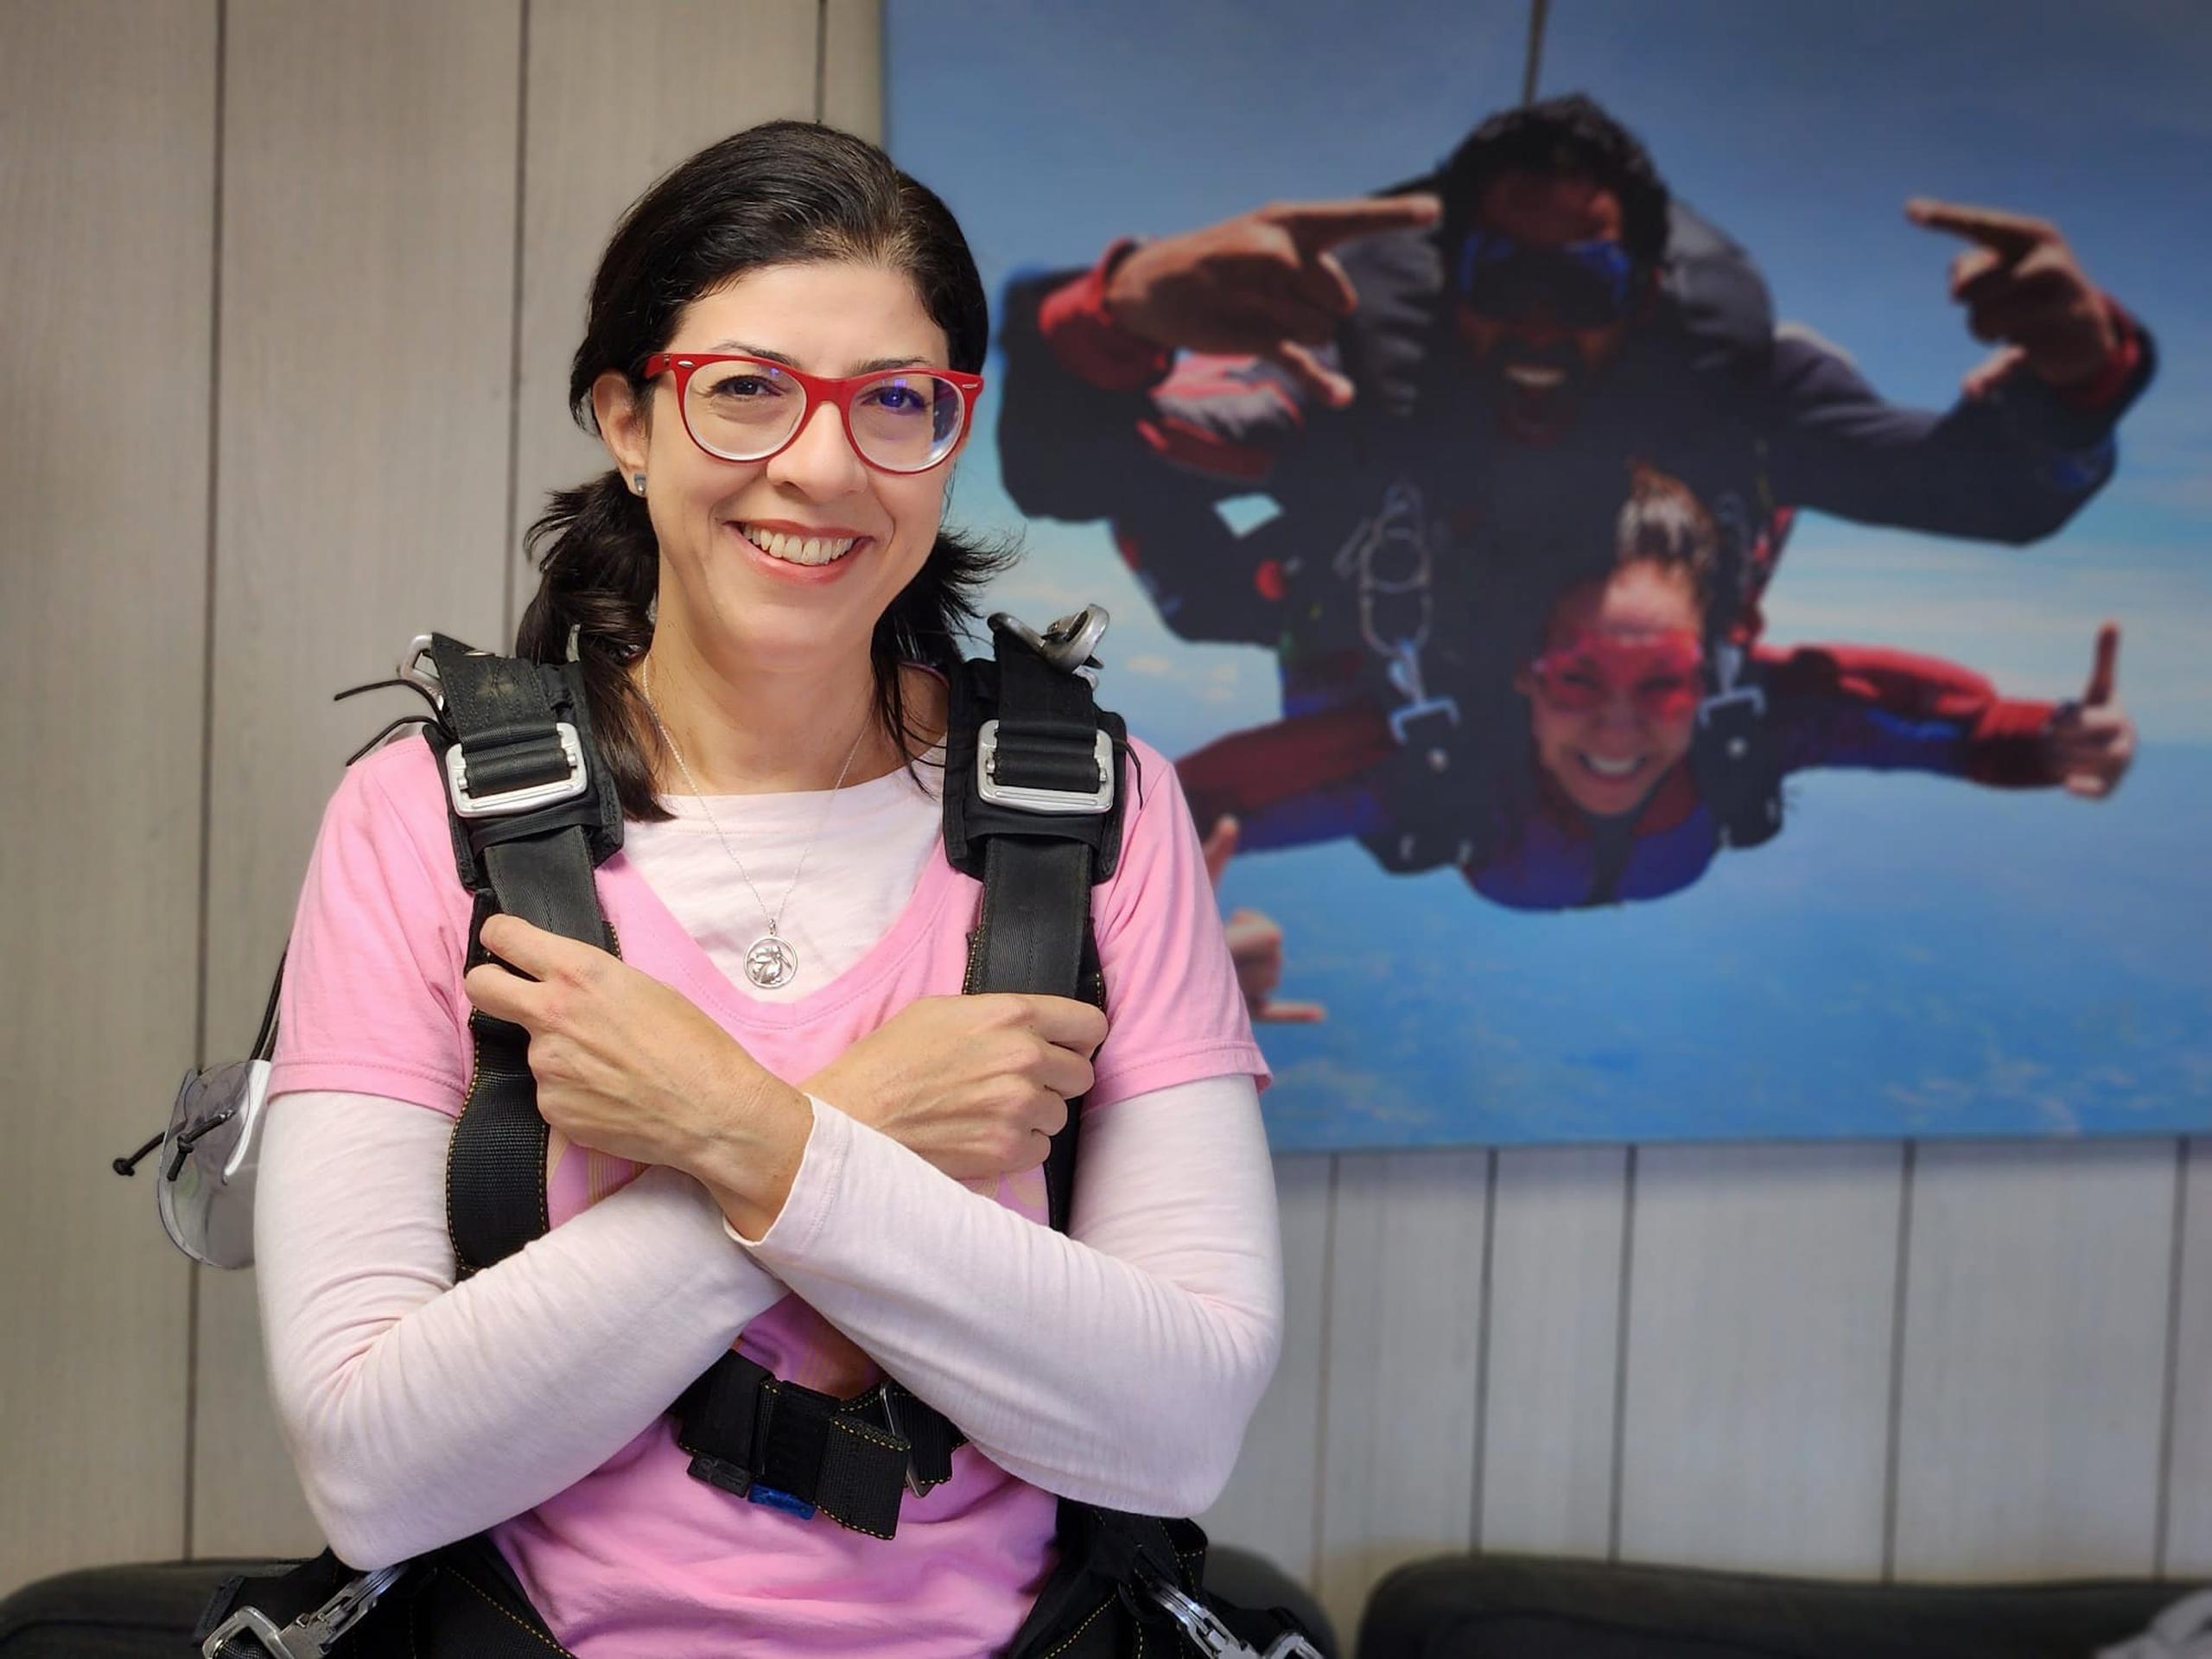 Mariana Nogales se lanzó desde un paracaídas en un acto simbólico para promover la participación política y electoral.